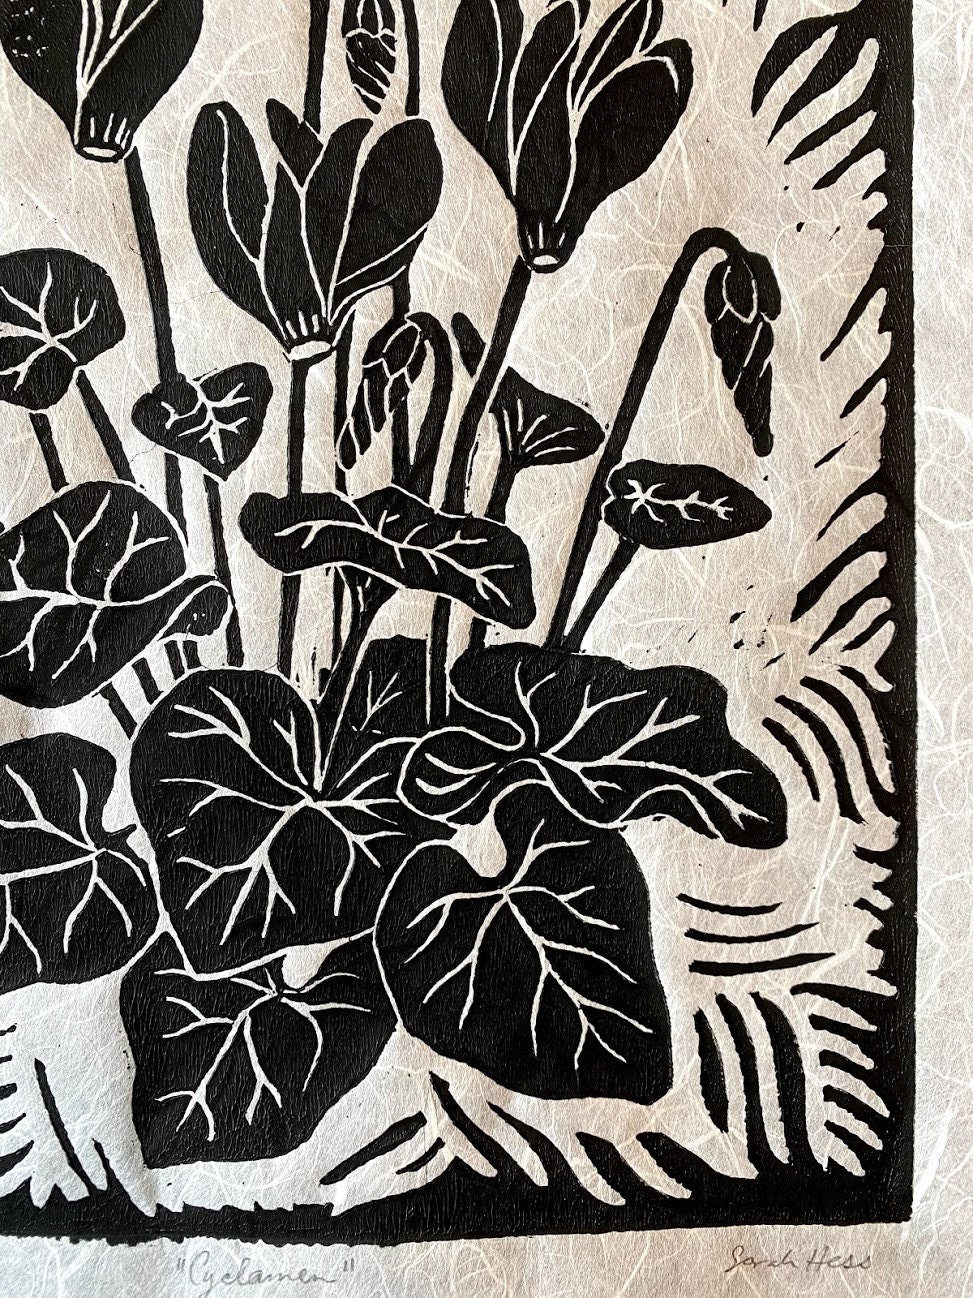 Cyclamen Block Print black and white flora l art linocut | Etsy